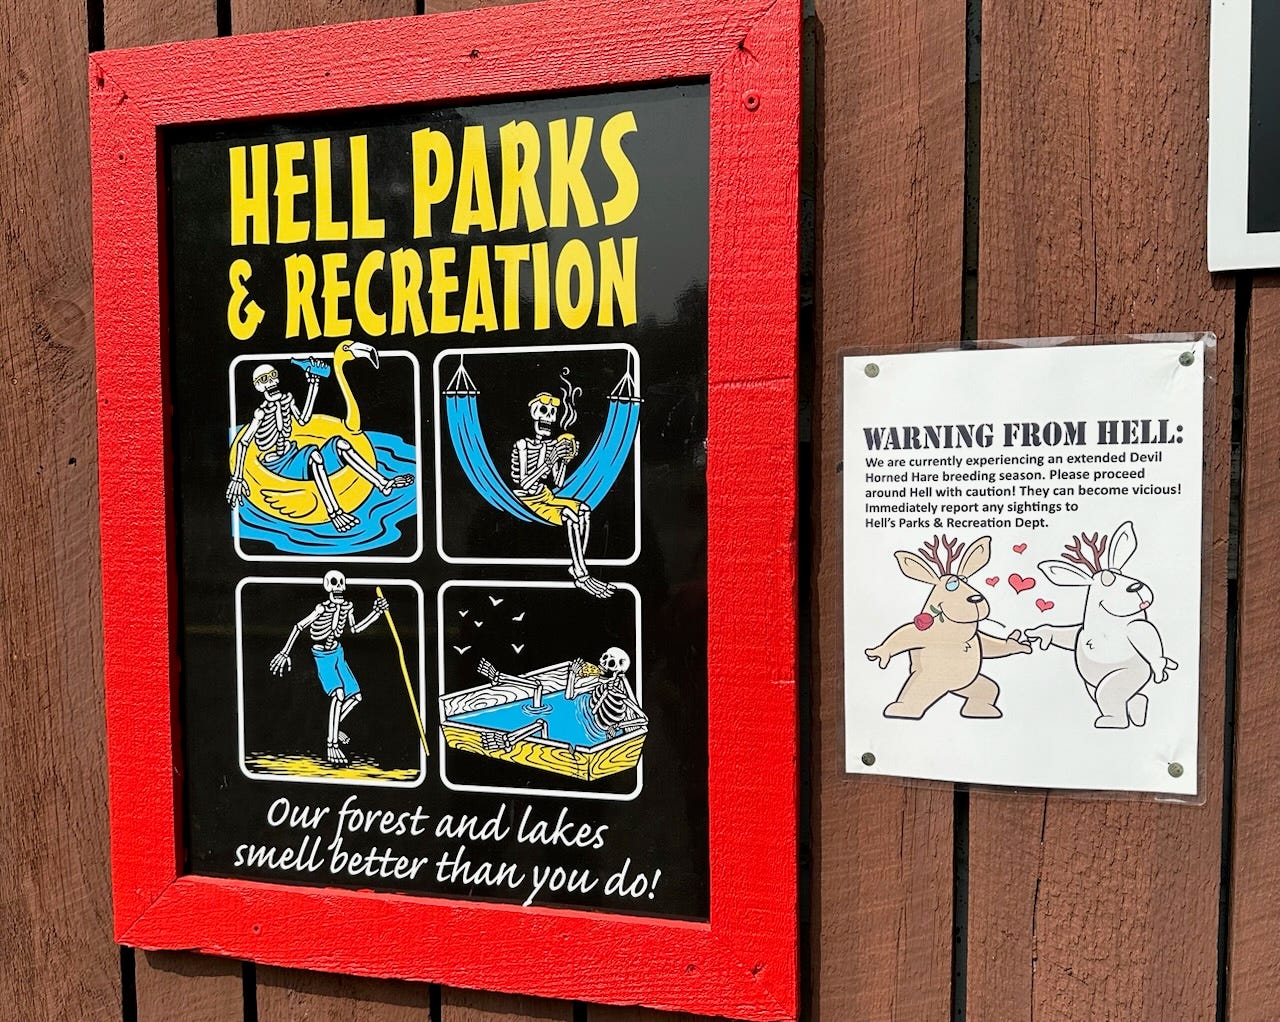 Hell Parks and Recreation-Schild mit einem Skelett in einer Hängematte, einem Schwimmkörper und einem Sargbecken neben einer Warnung vor einer verlängerten Brutzeit des Teufelshornhasen 